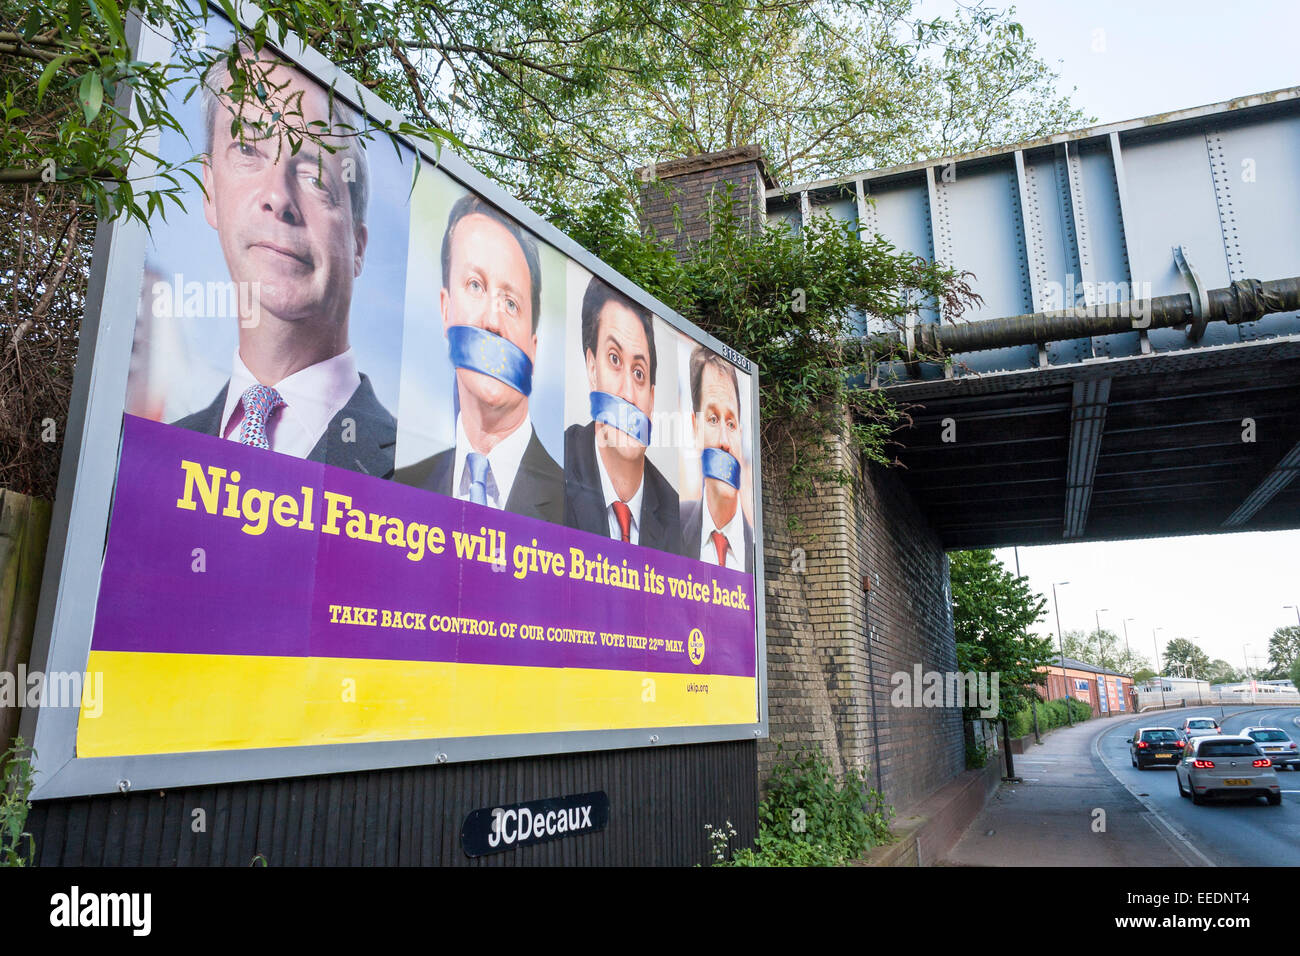 L'affiche de l'UKIP sur les élections de l'UE pour 2014 billboard Banque D'Images